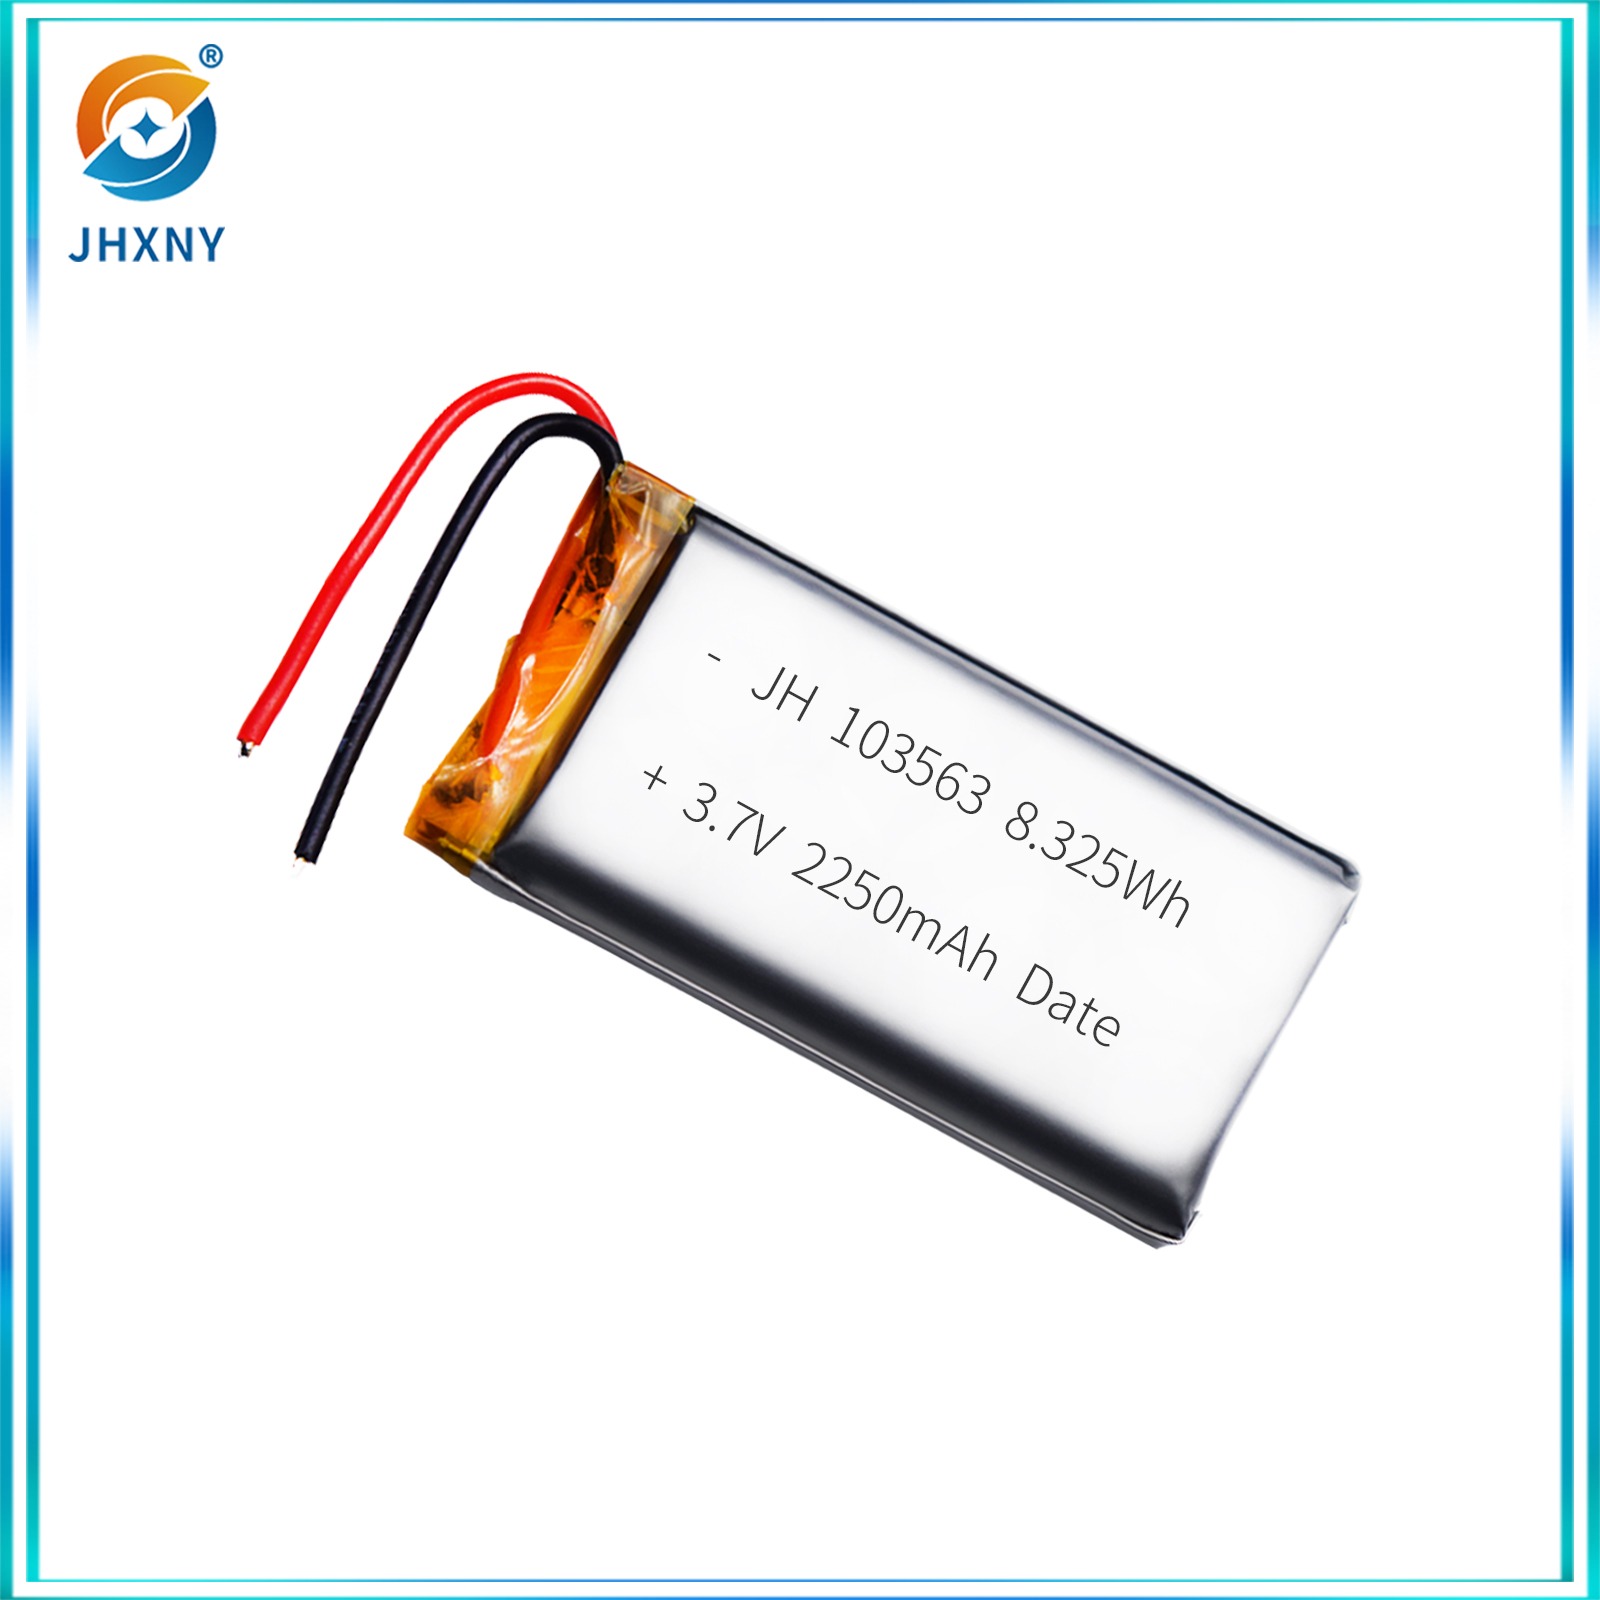 مصابيح ليزر الليزرية المزودة بأجهزة تدليك مصابيح التزيين بمصابيح الليثيوم من طراز JH103563 3-7 V2250MH.